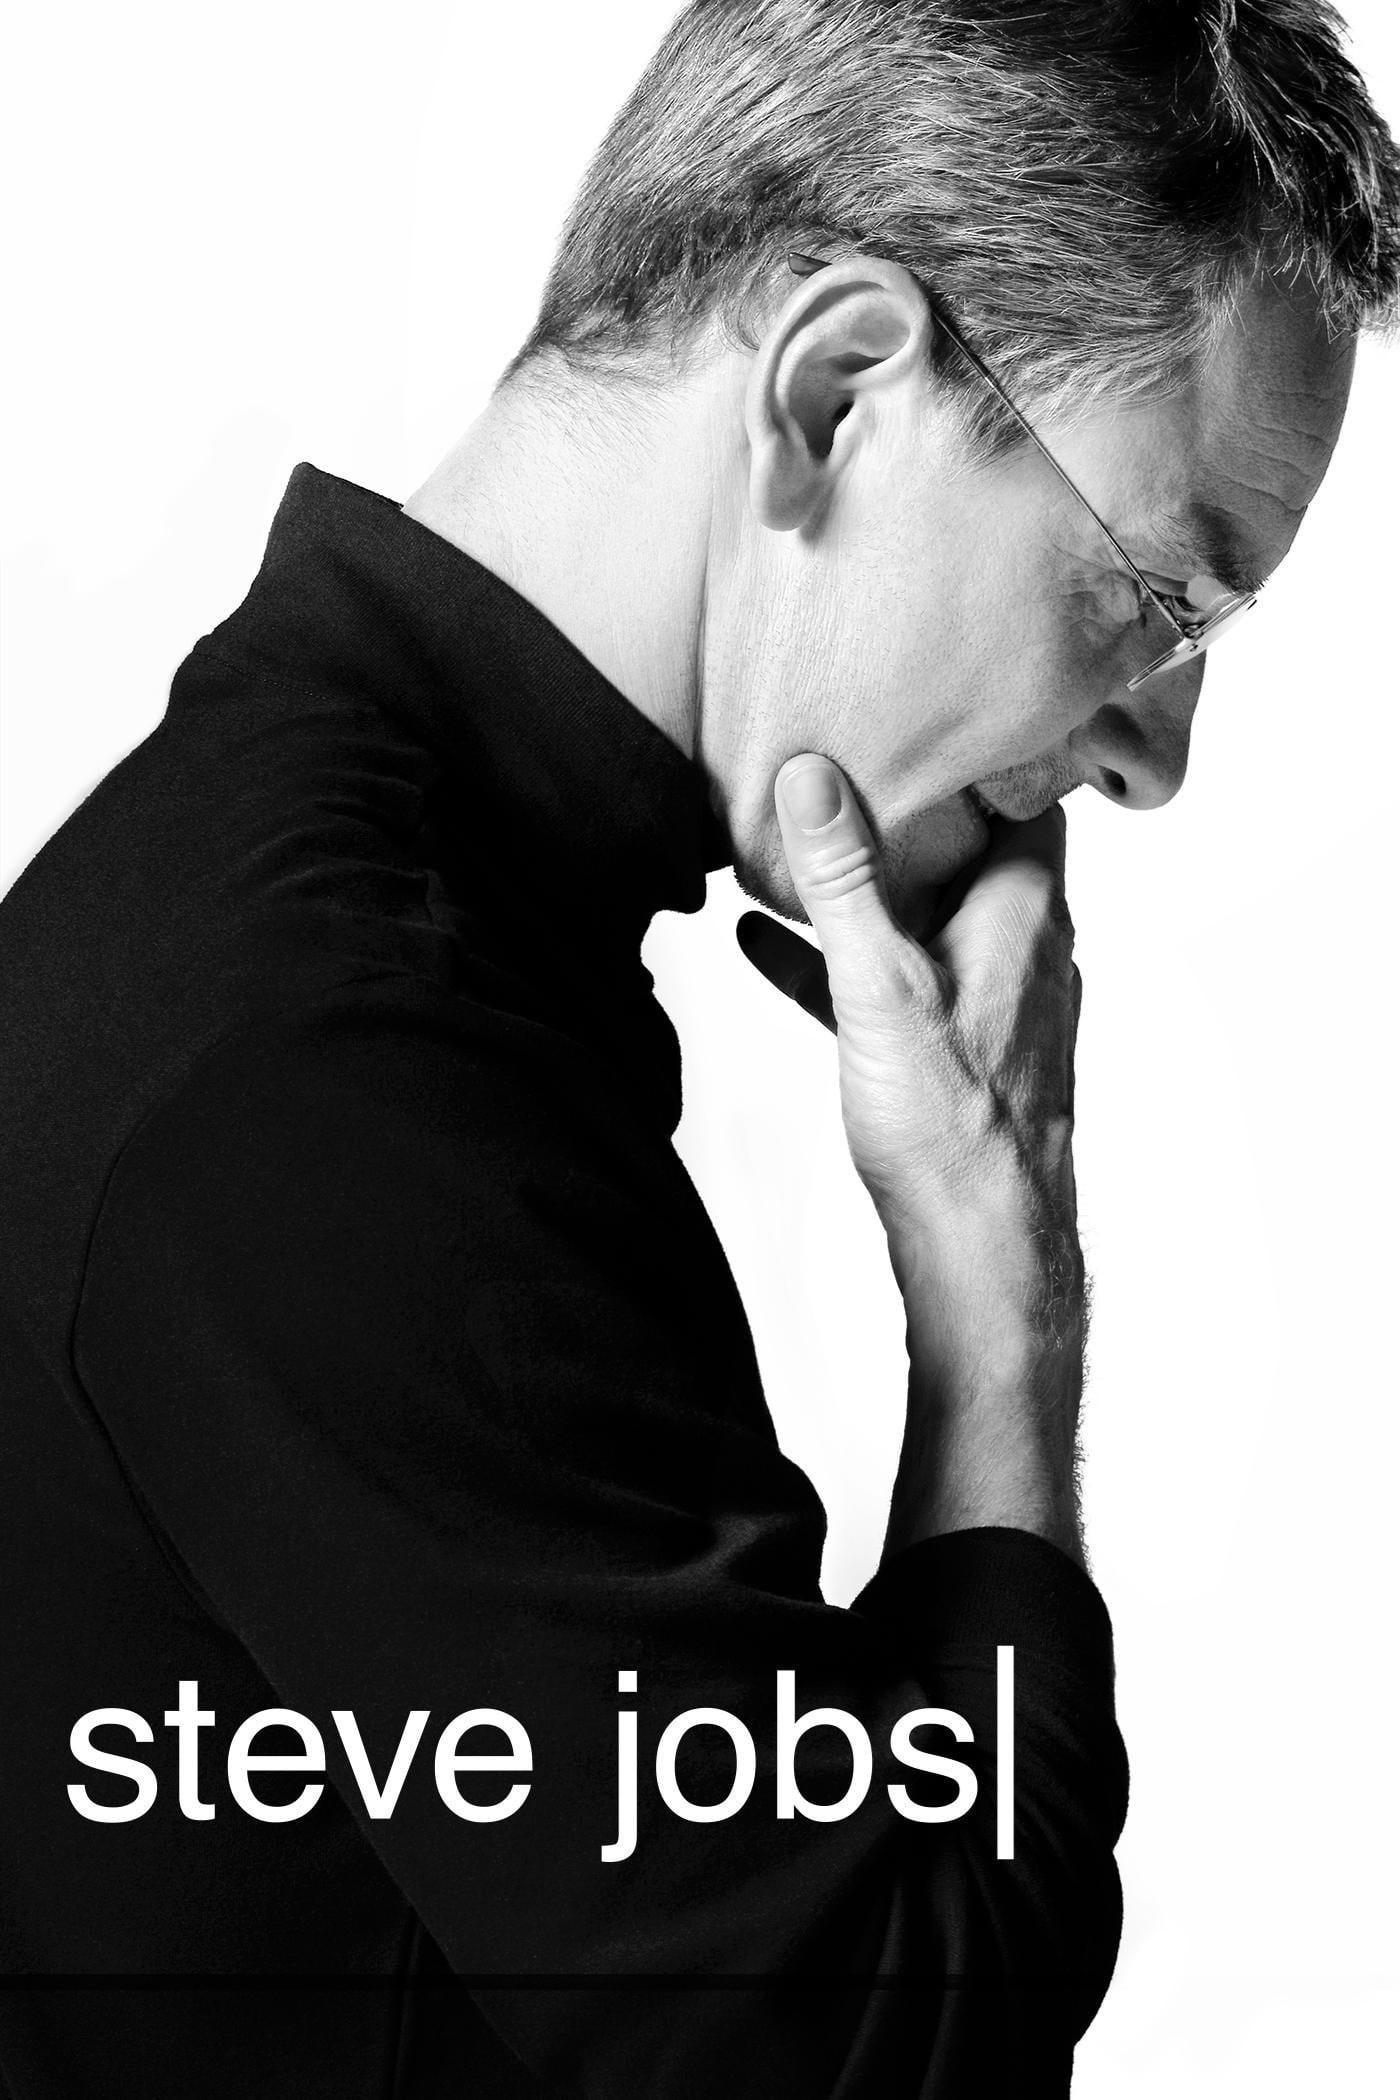 Steve jobs 2015 4k quality